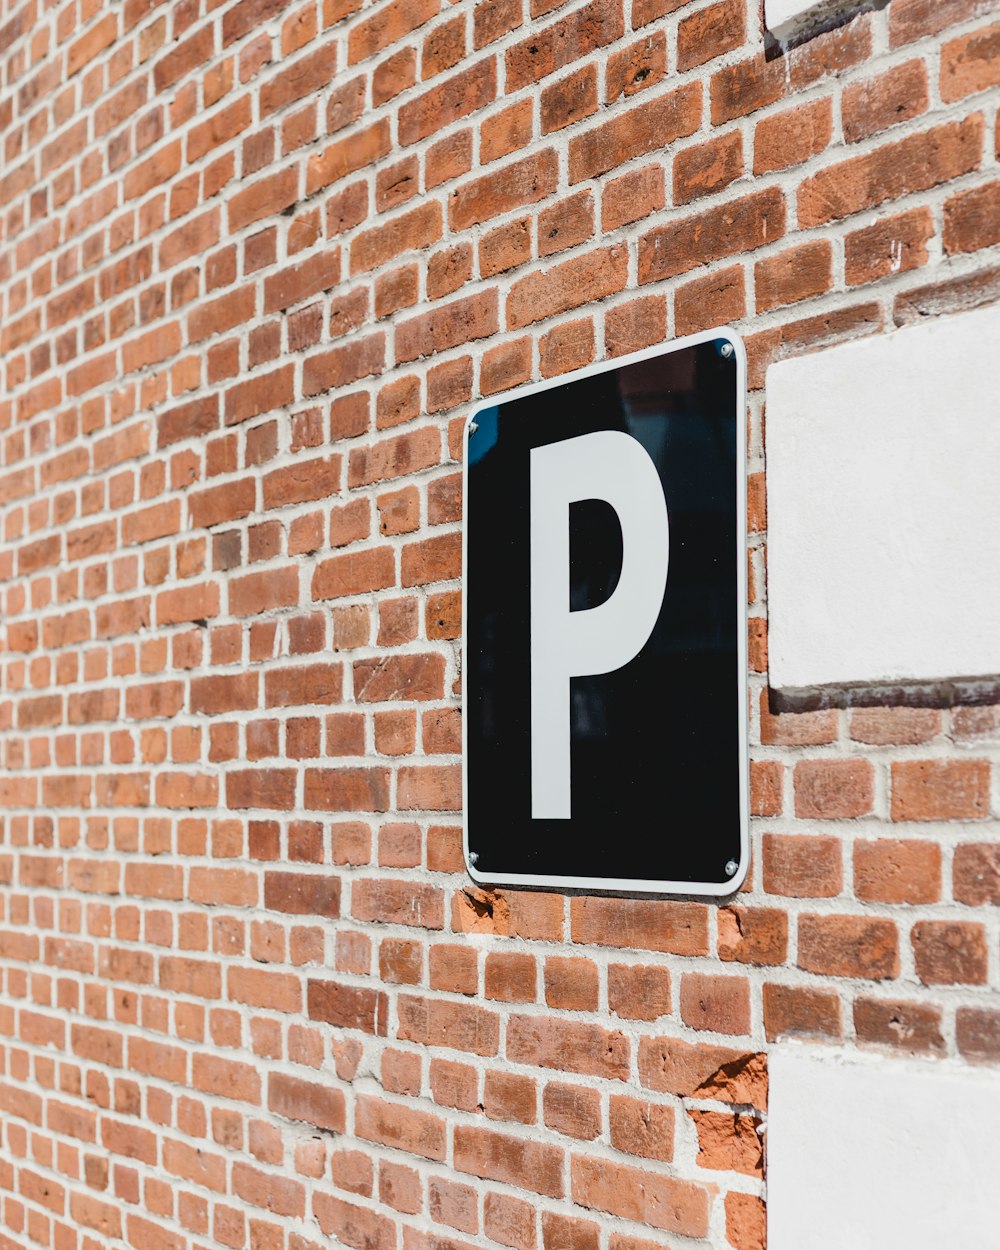 photo of parking signage